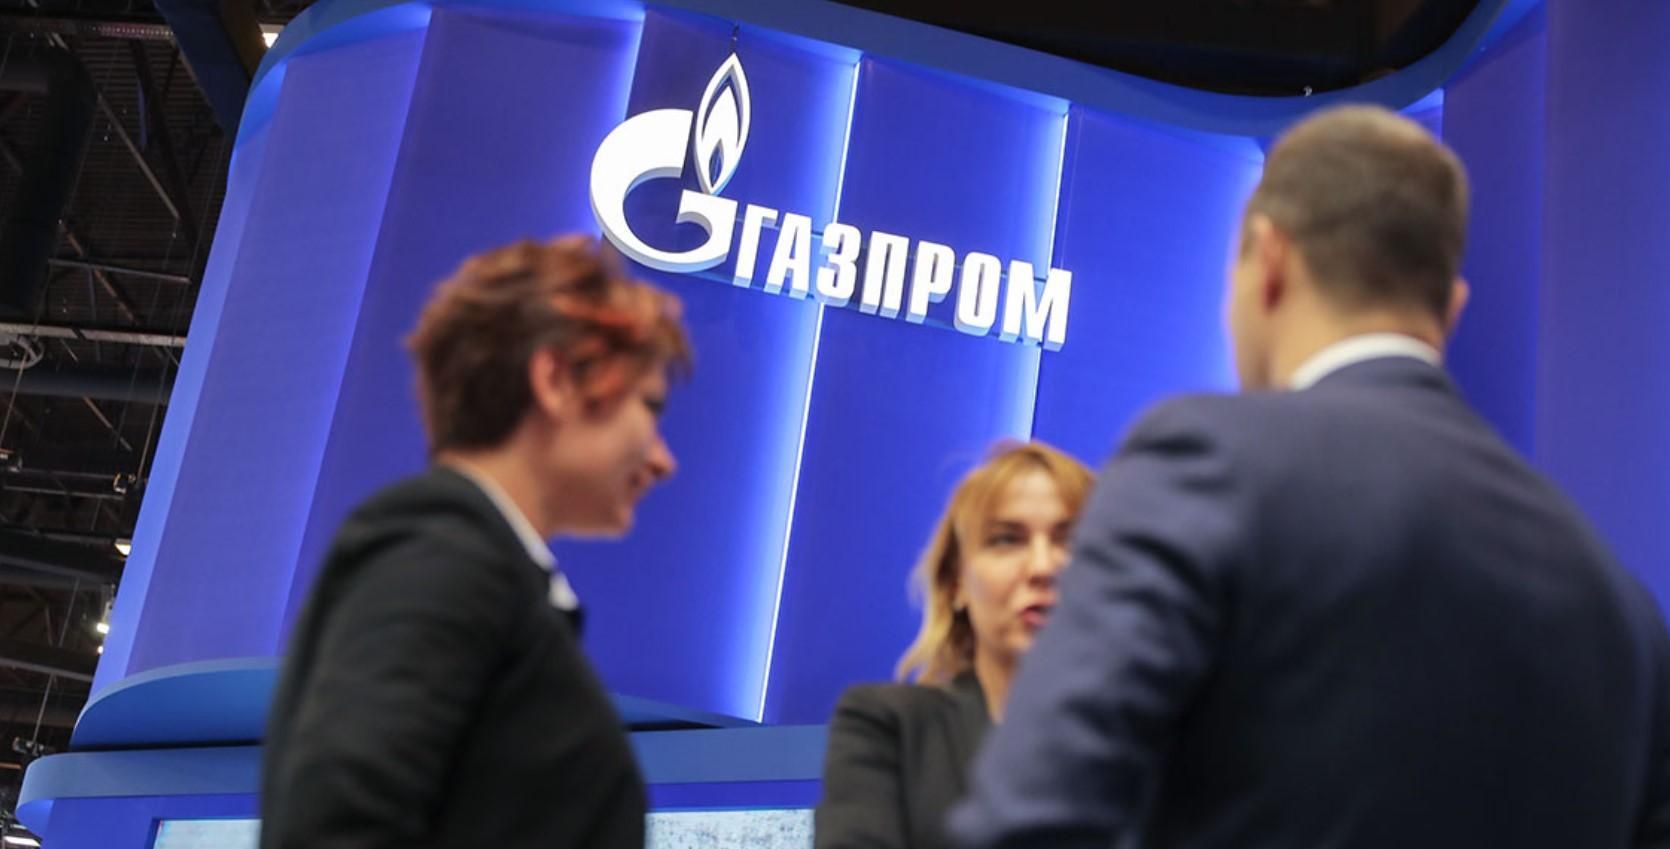 Шантаж триває, – оператор ГТС відреагував на відмову "Газпрому" щодо додаткових потужностей - Економічні новини України - Економіка